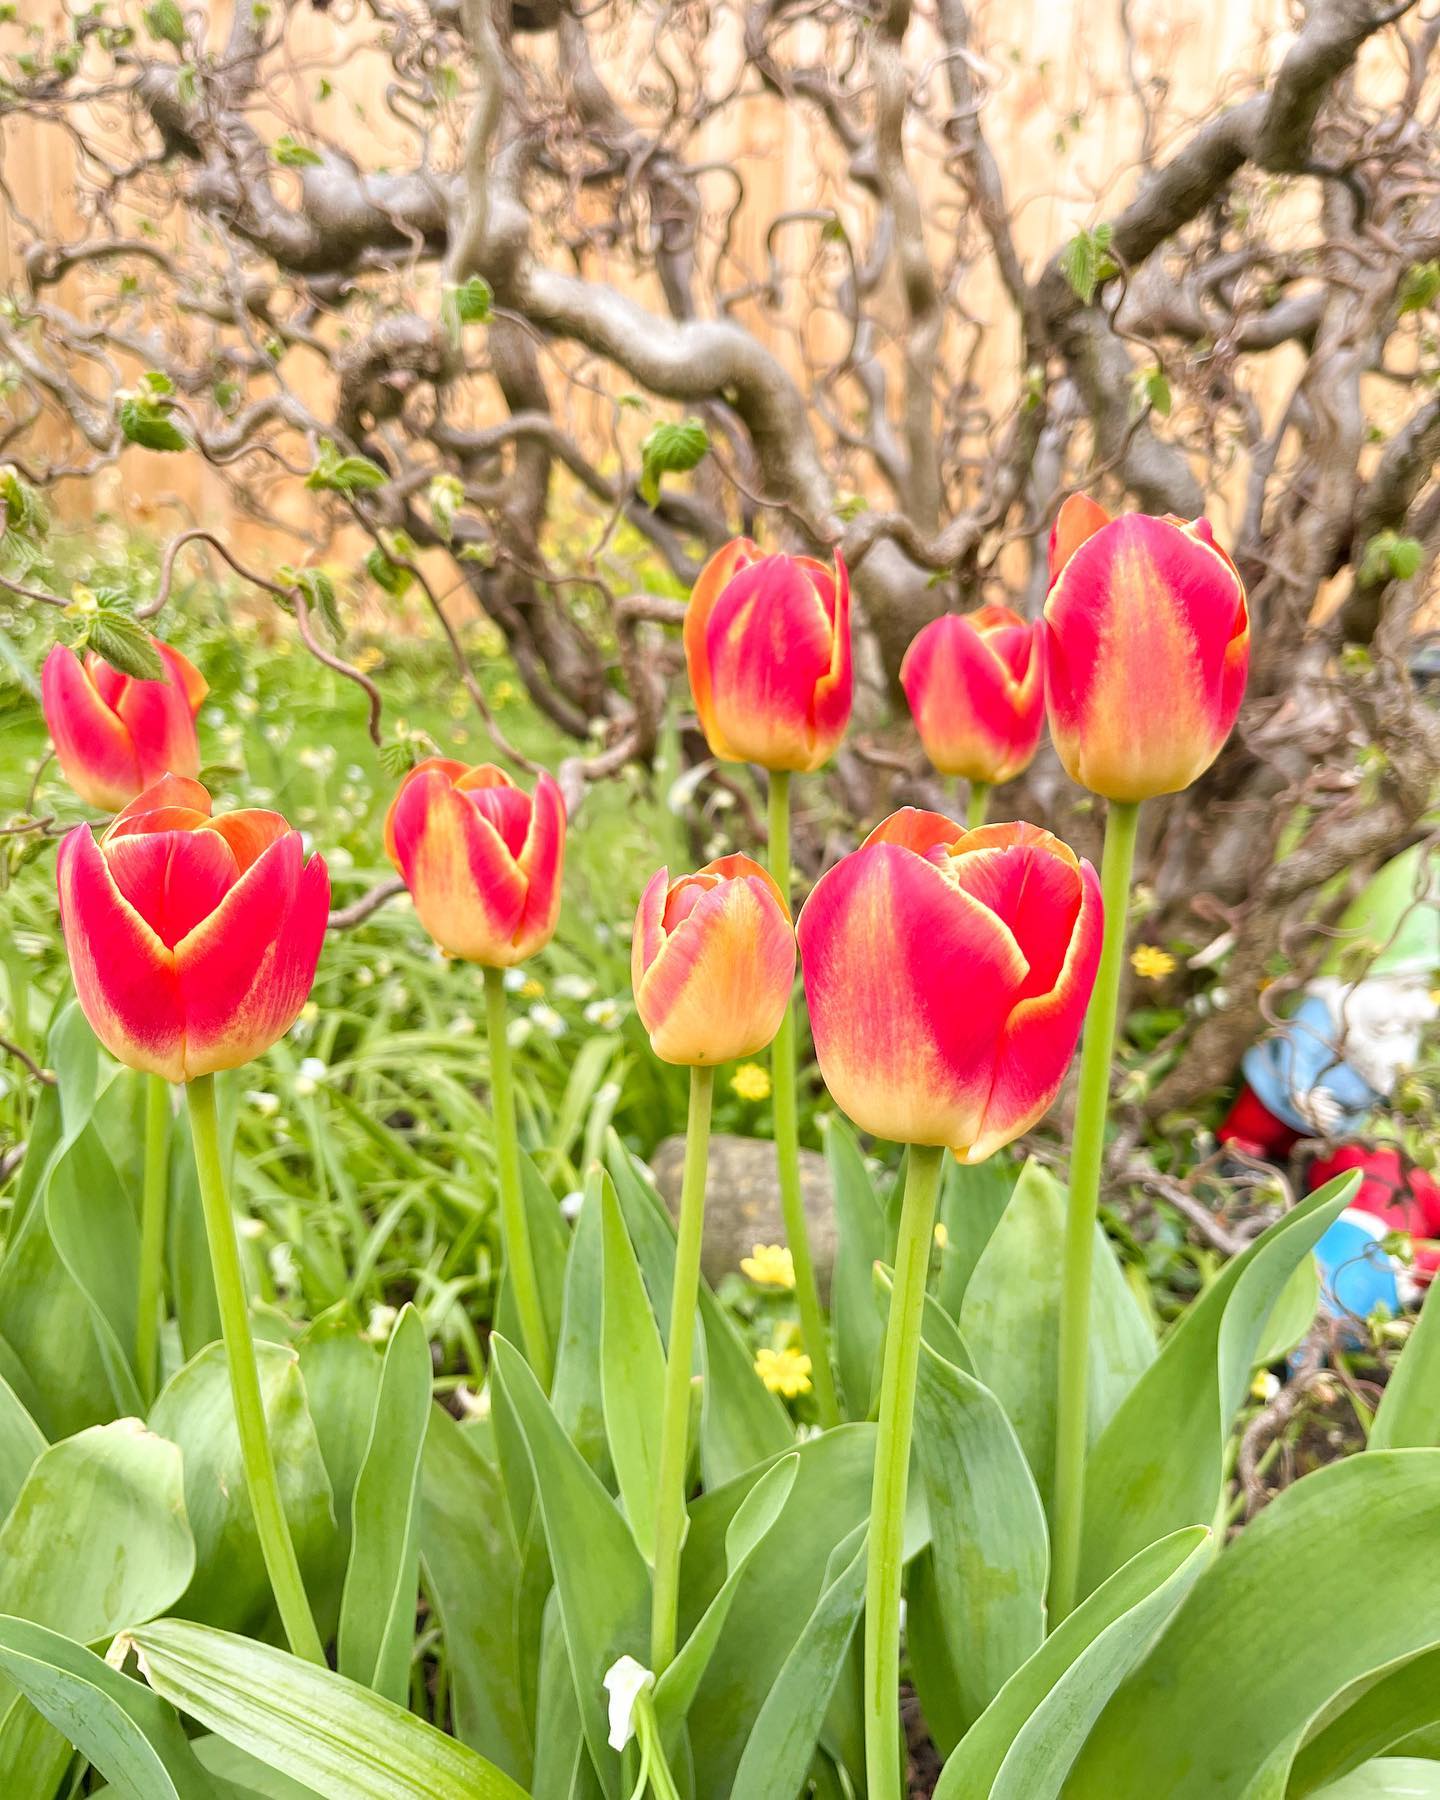 Tulips from the garden 🌷 
-
#tulipsgarden #tulipgarden #springtulips #tulipphotography #naturephotographer #wildlifephotography #gardennature #discoverunder2k #microblogger #natureblogger #wildlifeblogger #uktulips